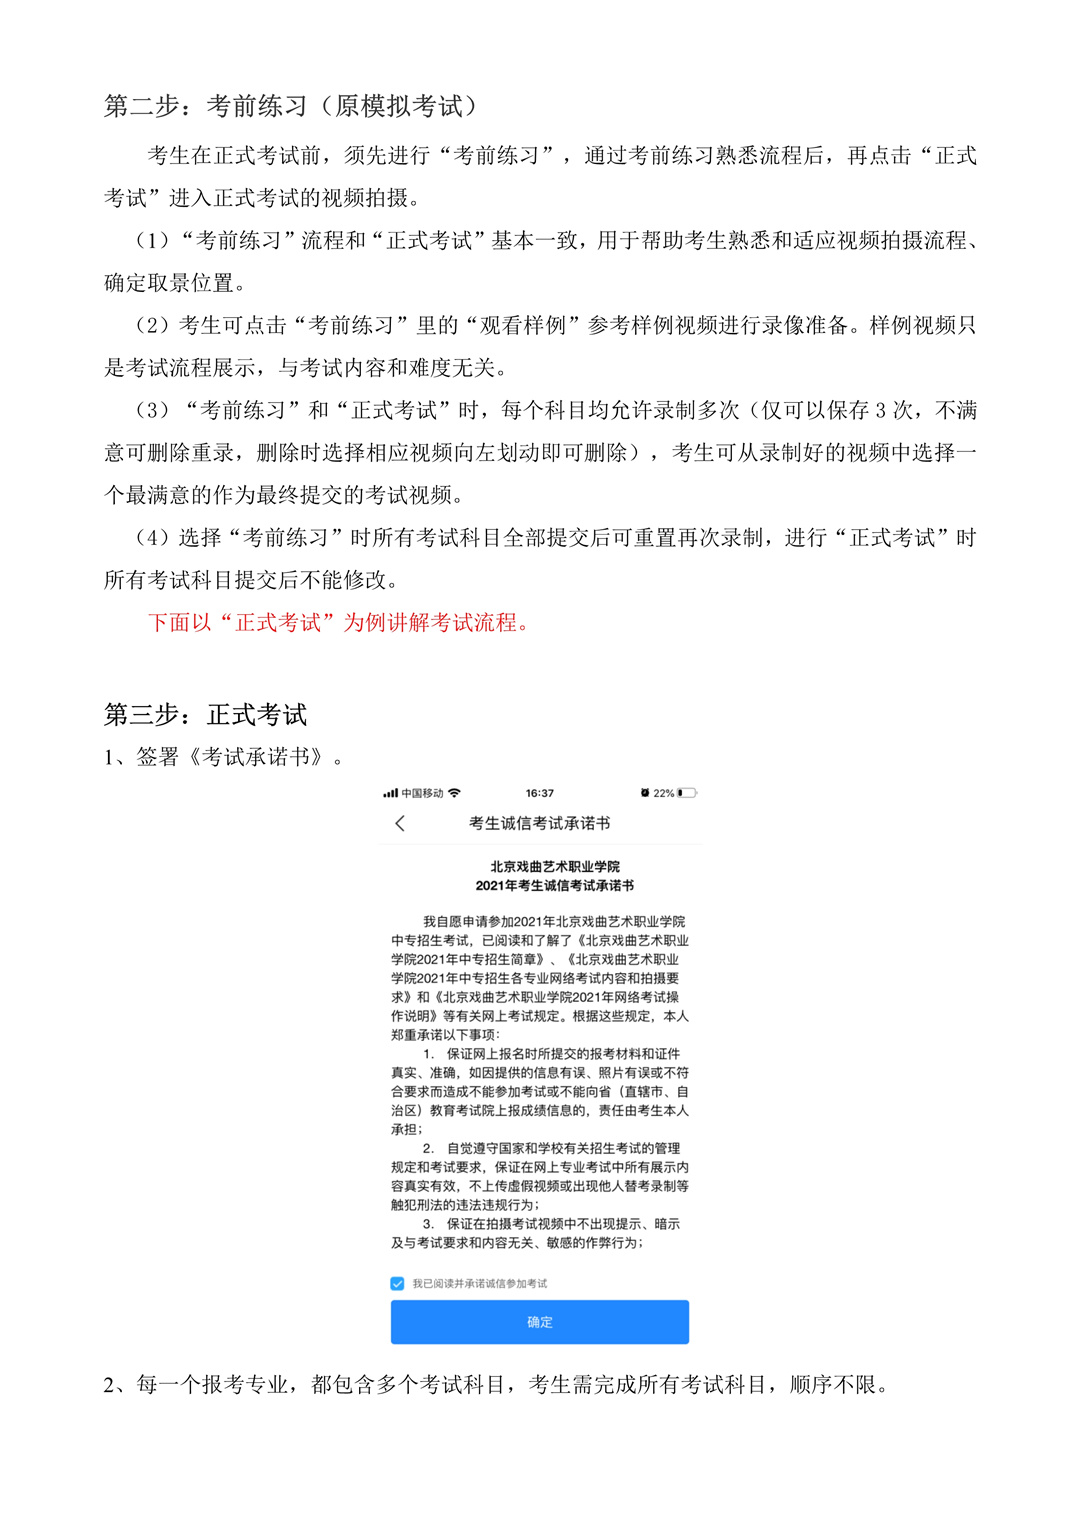 2021年北京戏曲艺术职业学院中专招生考试网上确认、打印《报名登记表》和网络考试操作说明